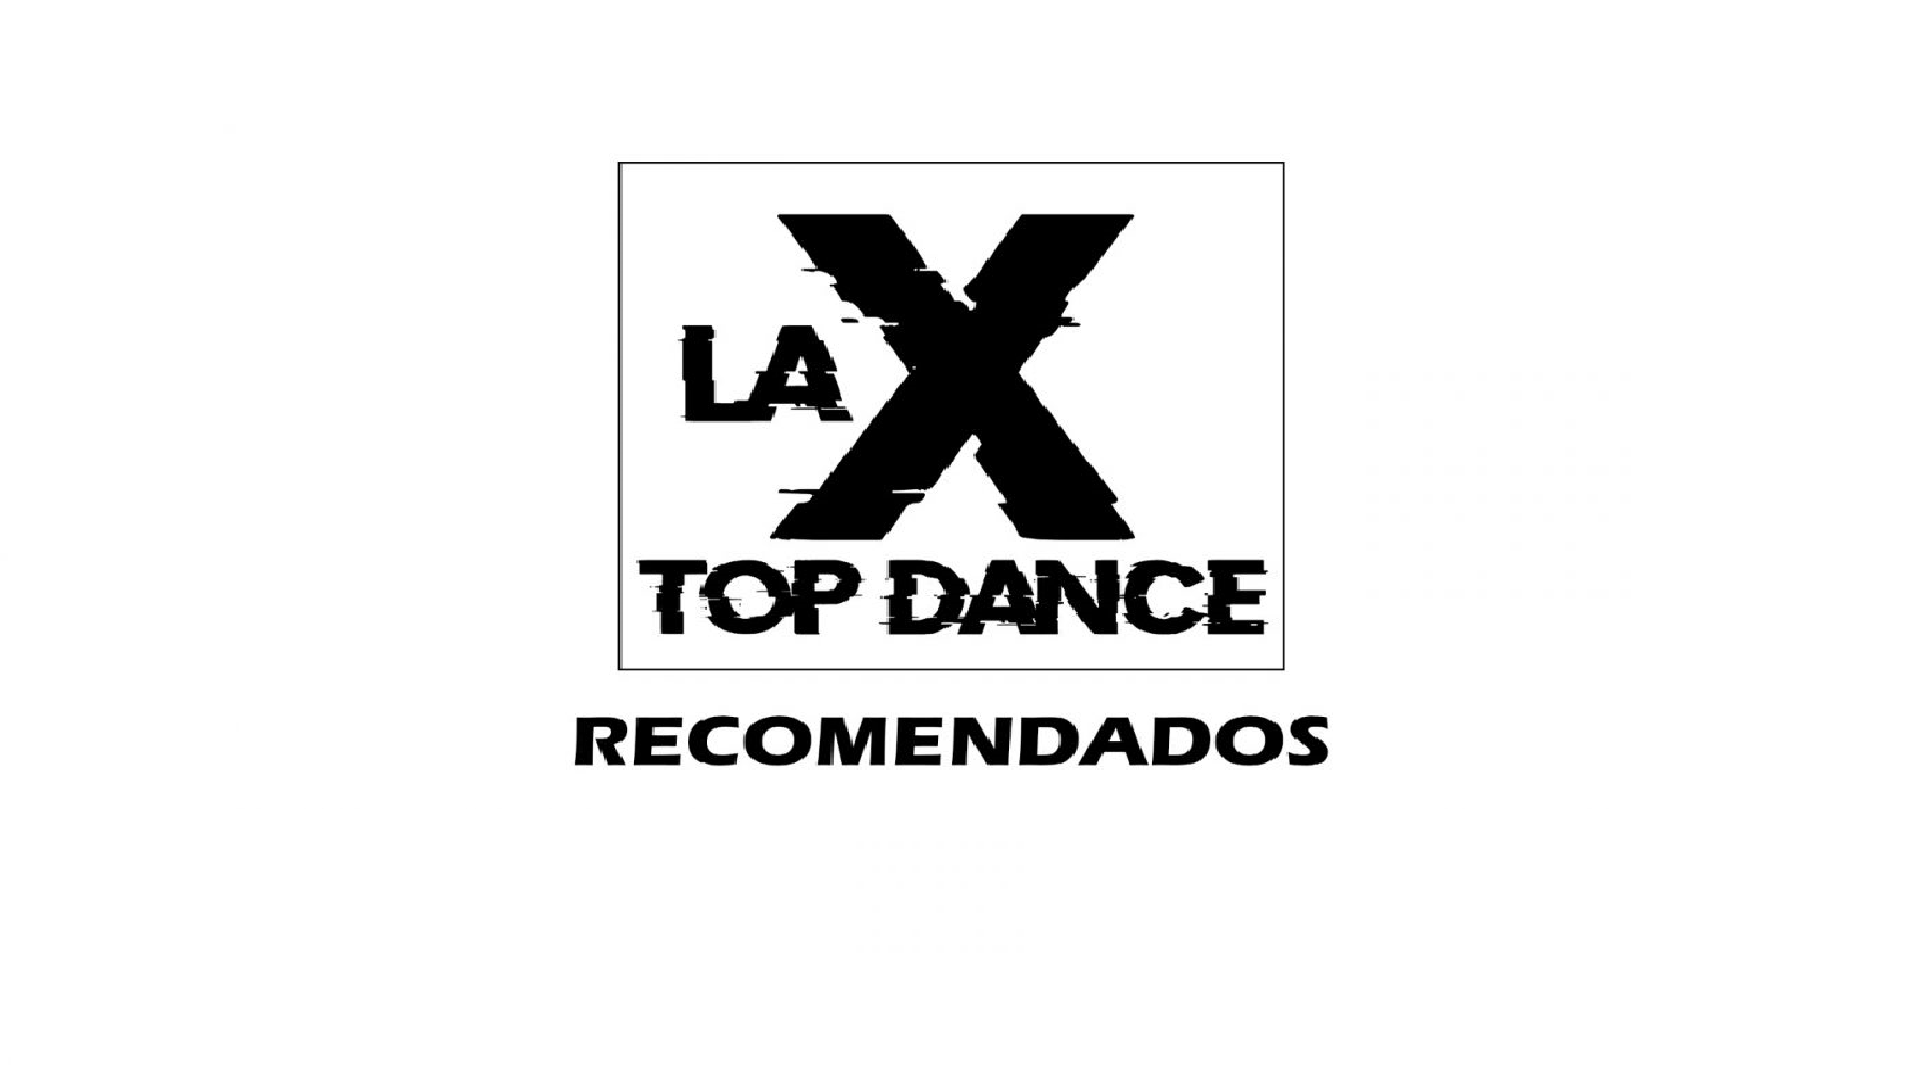 RECOMENDADOS LA X TOP DANCE  MAYO 21